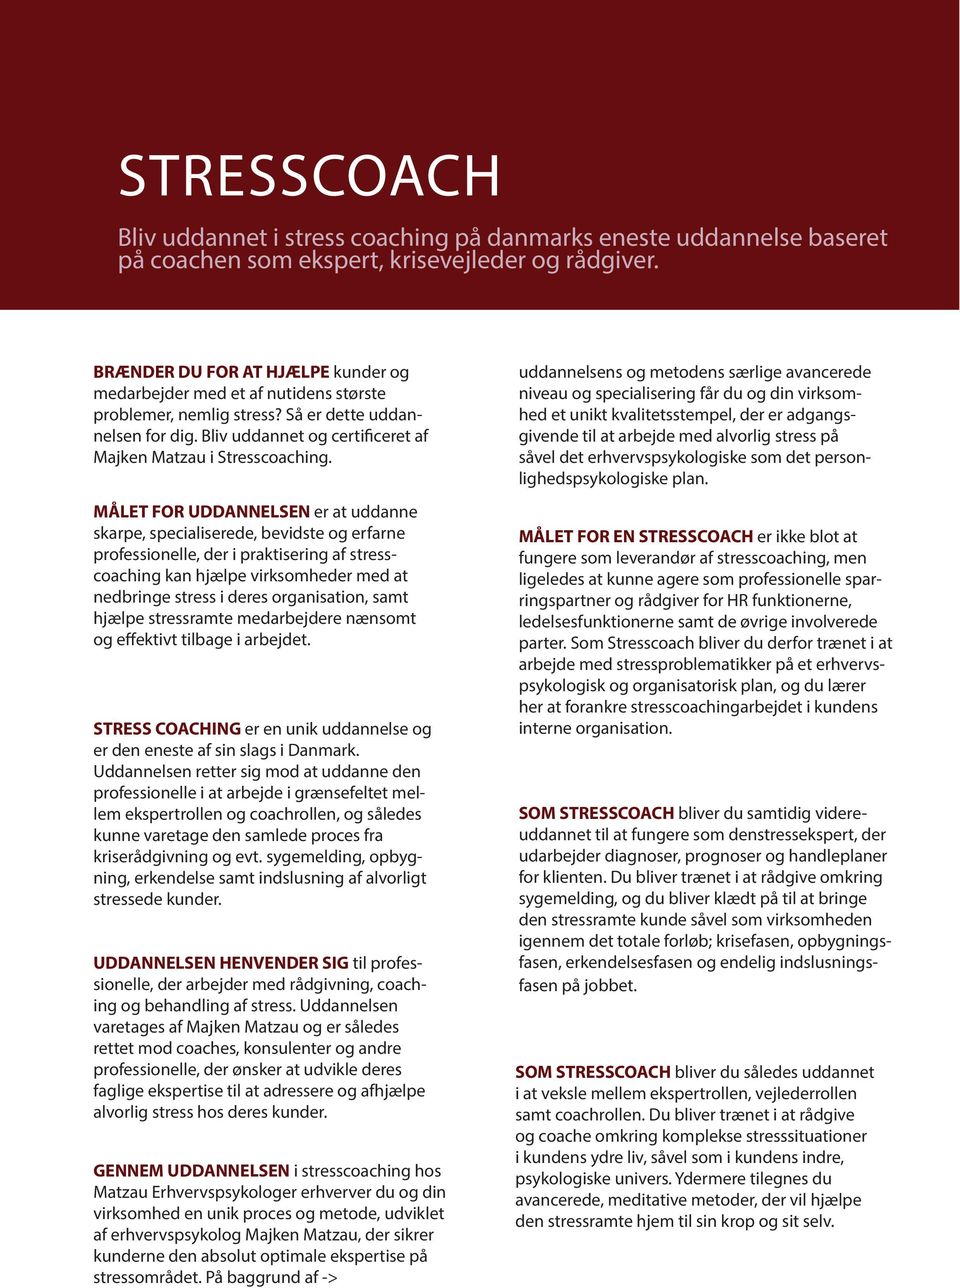 MÅLET FOR UDDANNELSEN er at uddanne skarpe, specialiserede, bevidste og erfarne professionelle, der i praktisering af stresscoaching kan hjælpe virksomheder med at nedbringe stress i deres